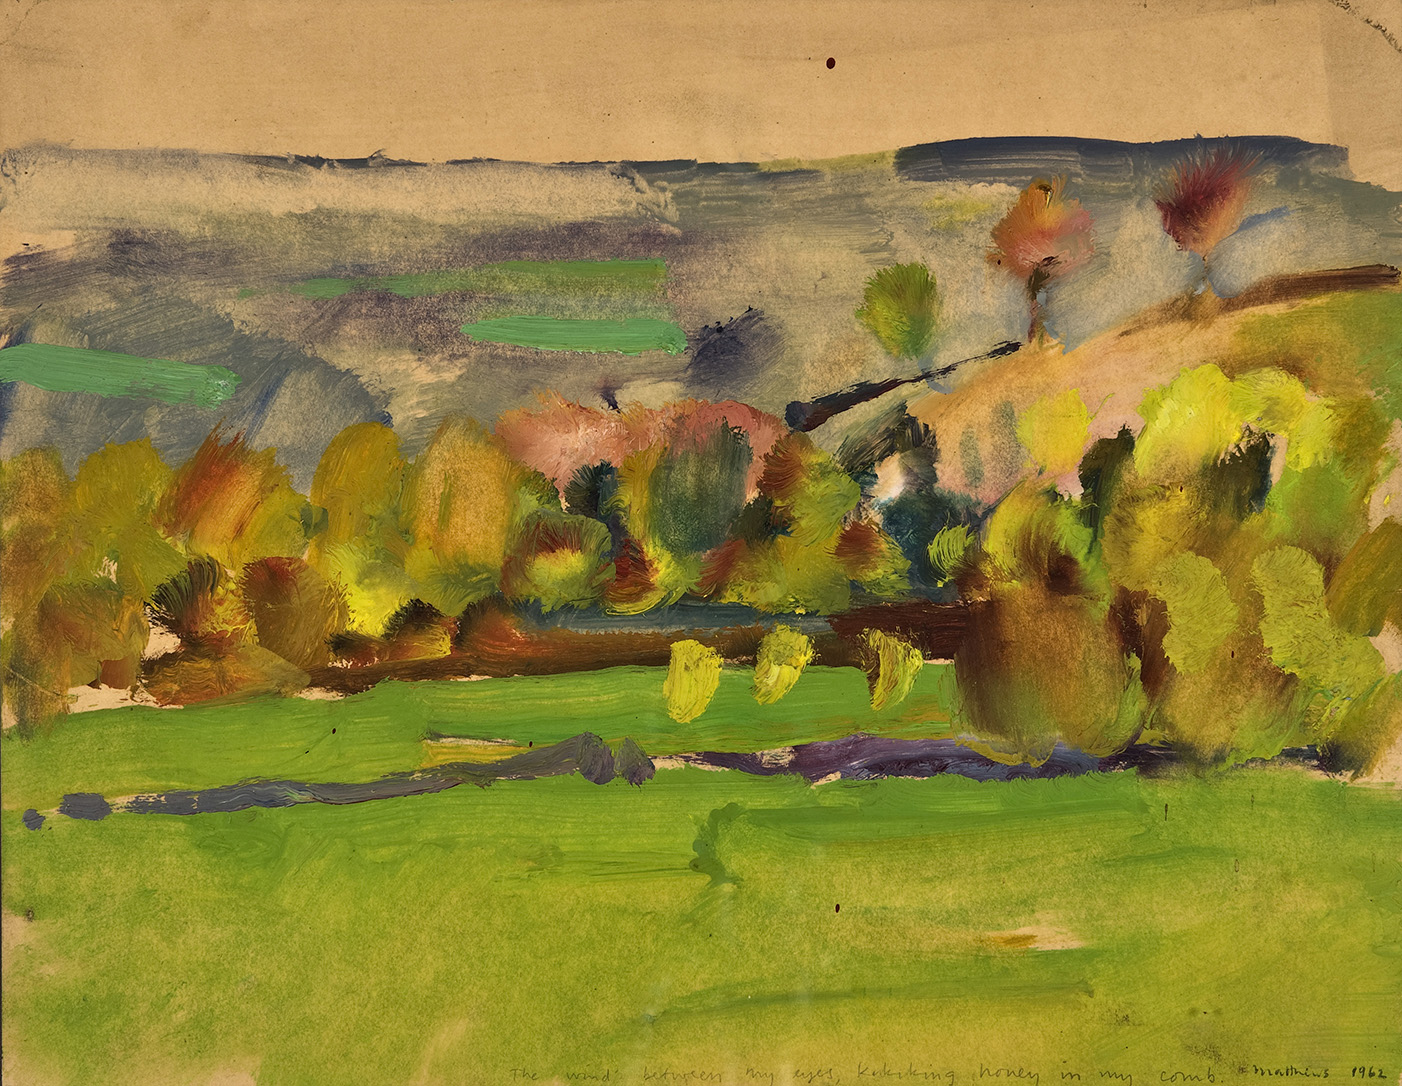  Duanesberg, N.Y.; oil on paper, 11 x 14